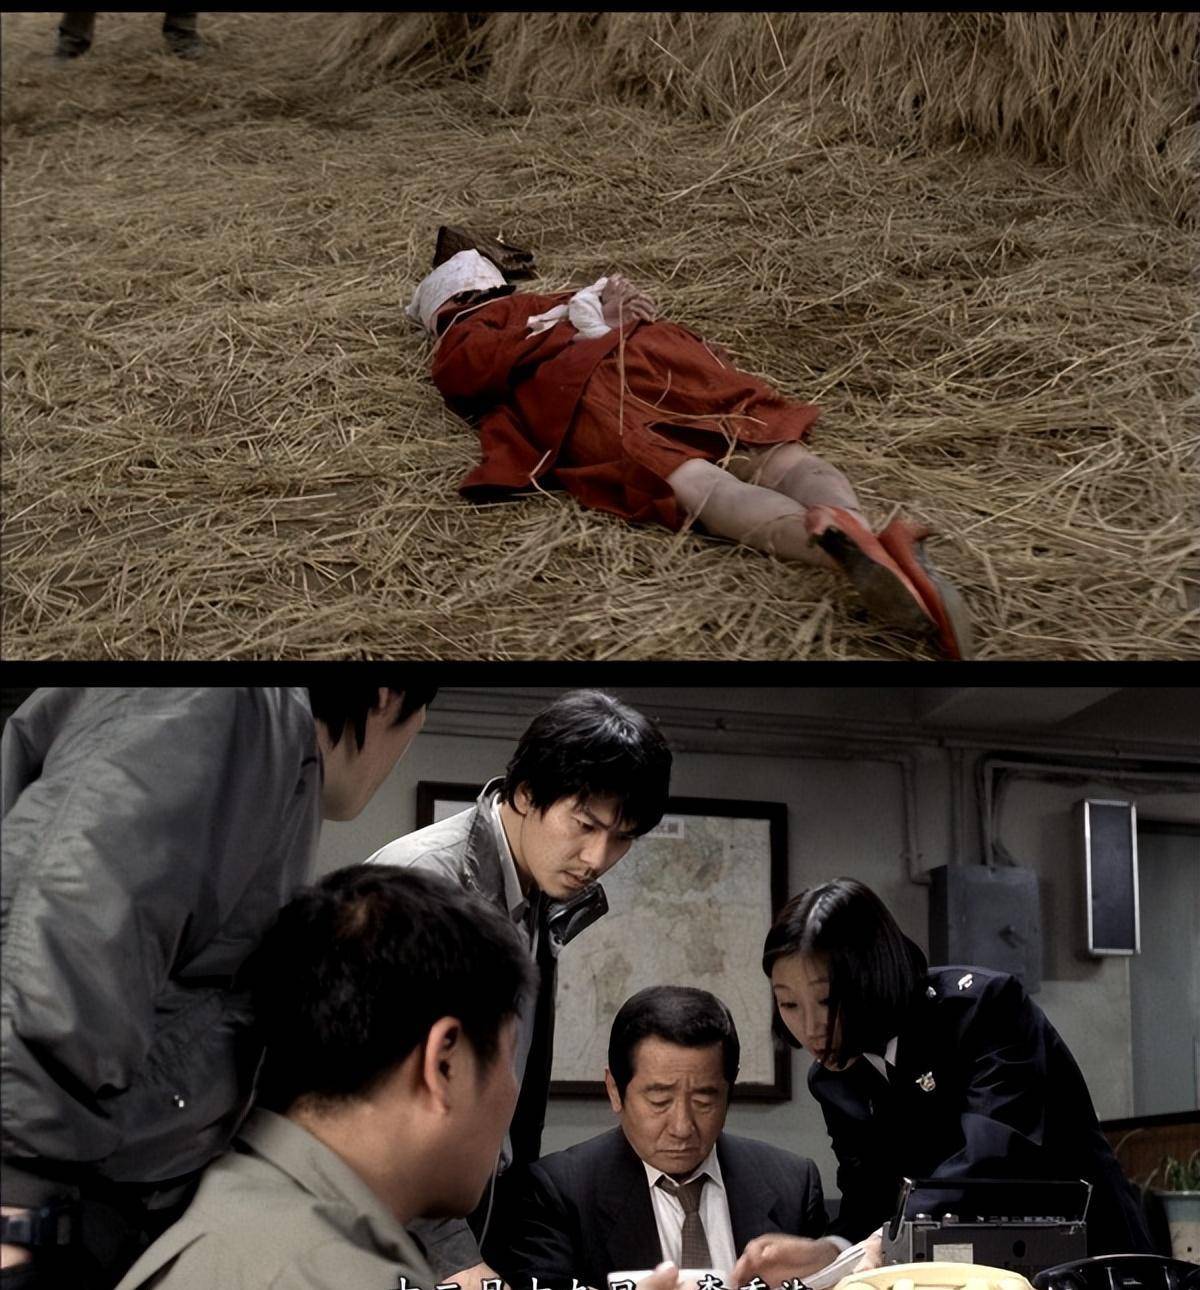 第一集的雨夜屠夫,不禁让人想起韩国经典电影《杀人回忆》,一样的